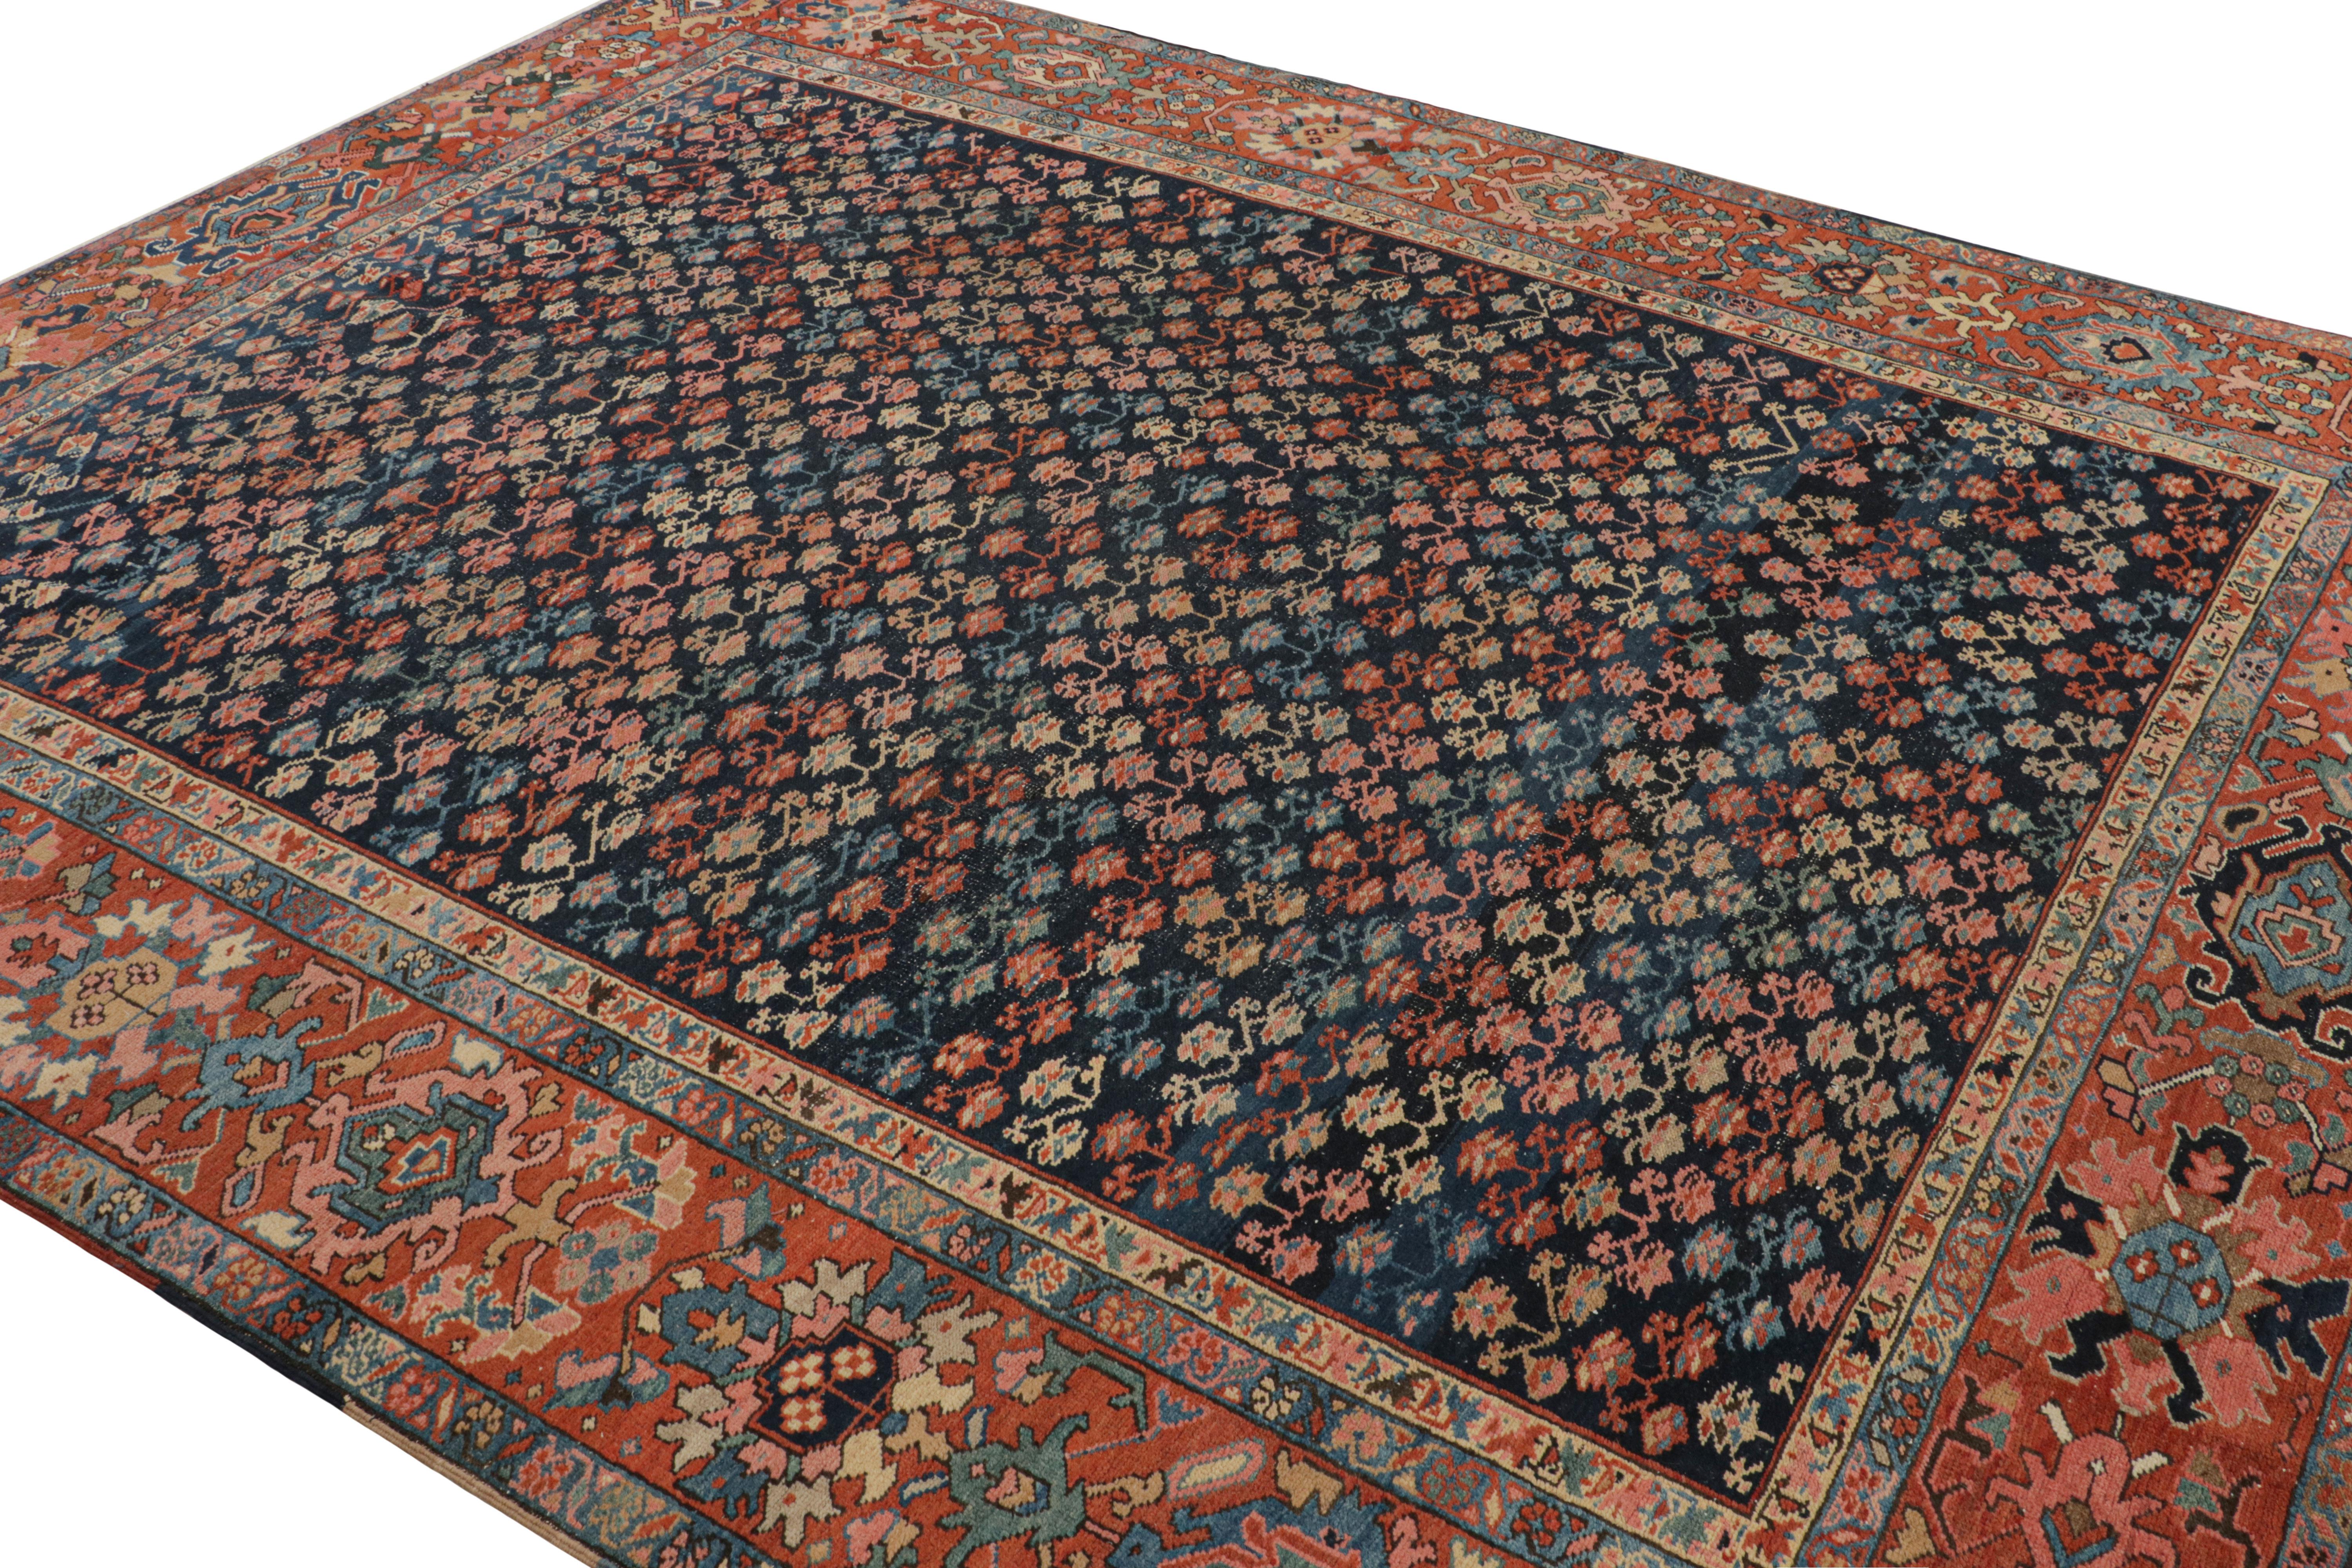 Noué à la main en laine, ce tapis 8x10, originaire de Perse, vers 1920-1930, est une pièce antique Bakshaish très spéciale avec des motifs floraux géométriques sur tout le pourtour. 
 
Sur le Design : 

Il s'agit d'un chef-d'œuvre rare provenant de